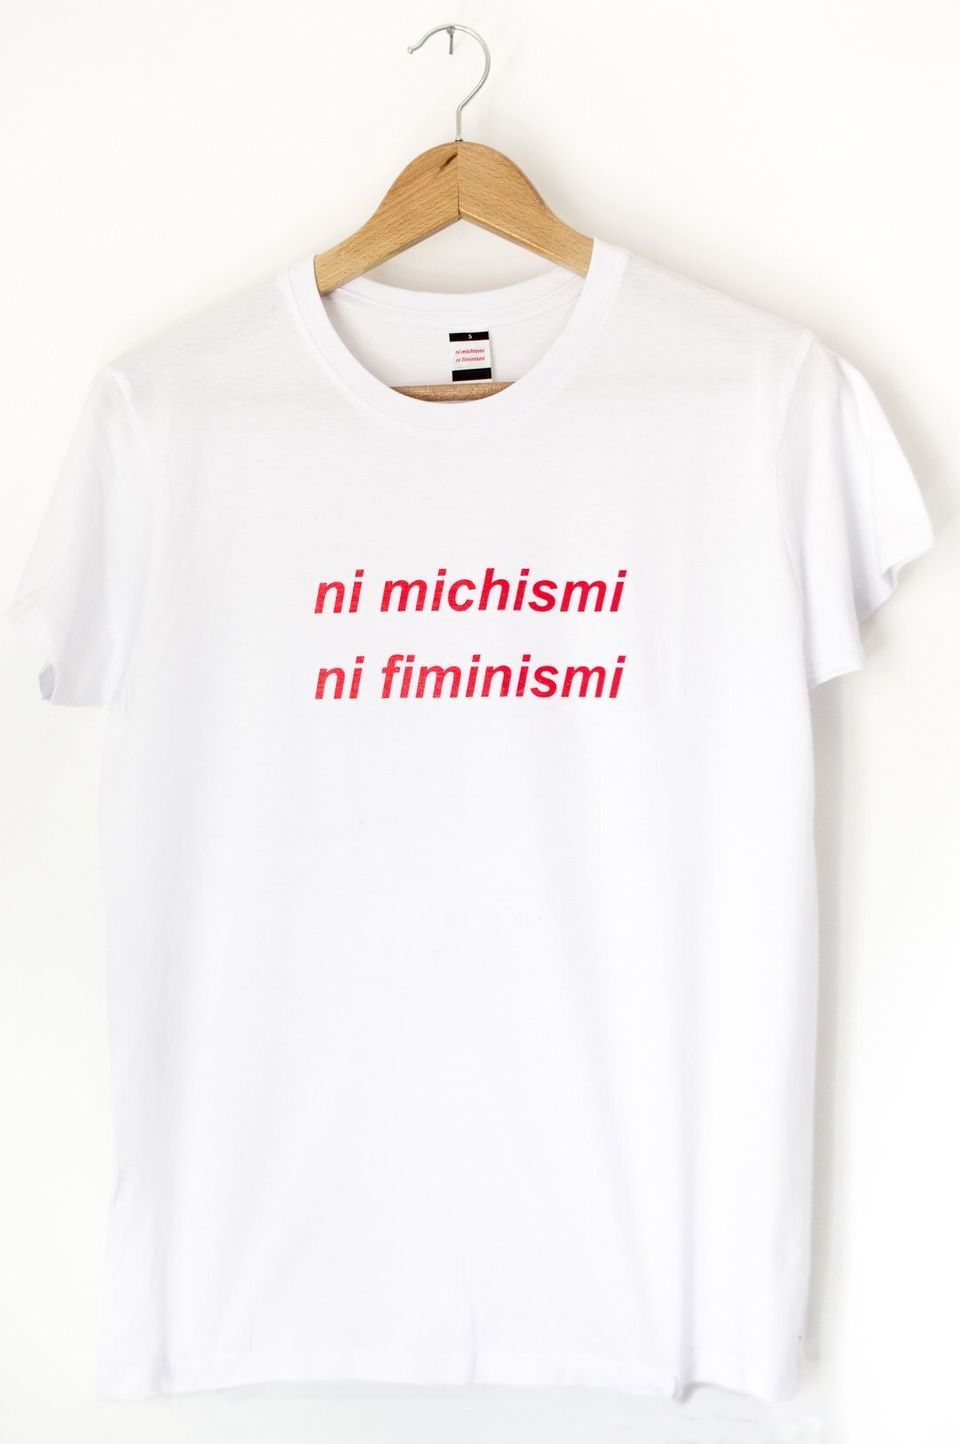 Doce camisetas feministas que querrás tener en tu | El HuffPost Life